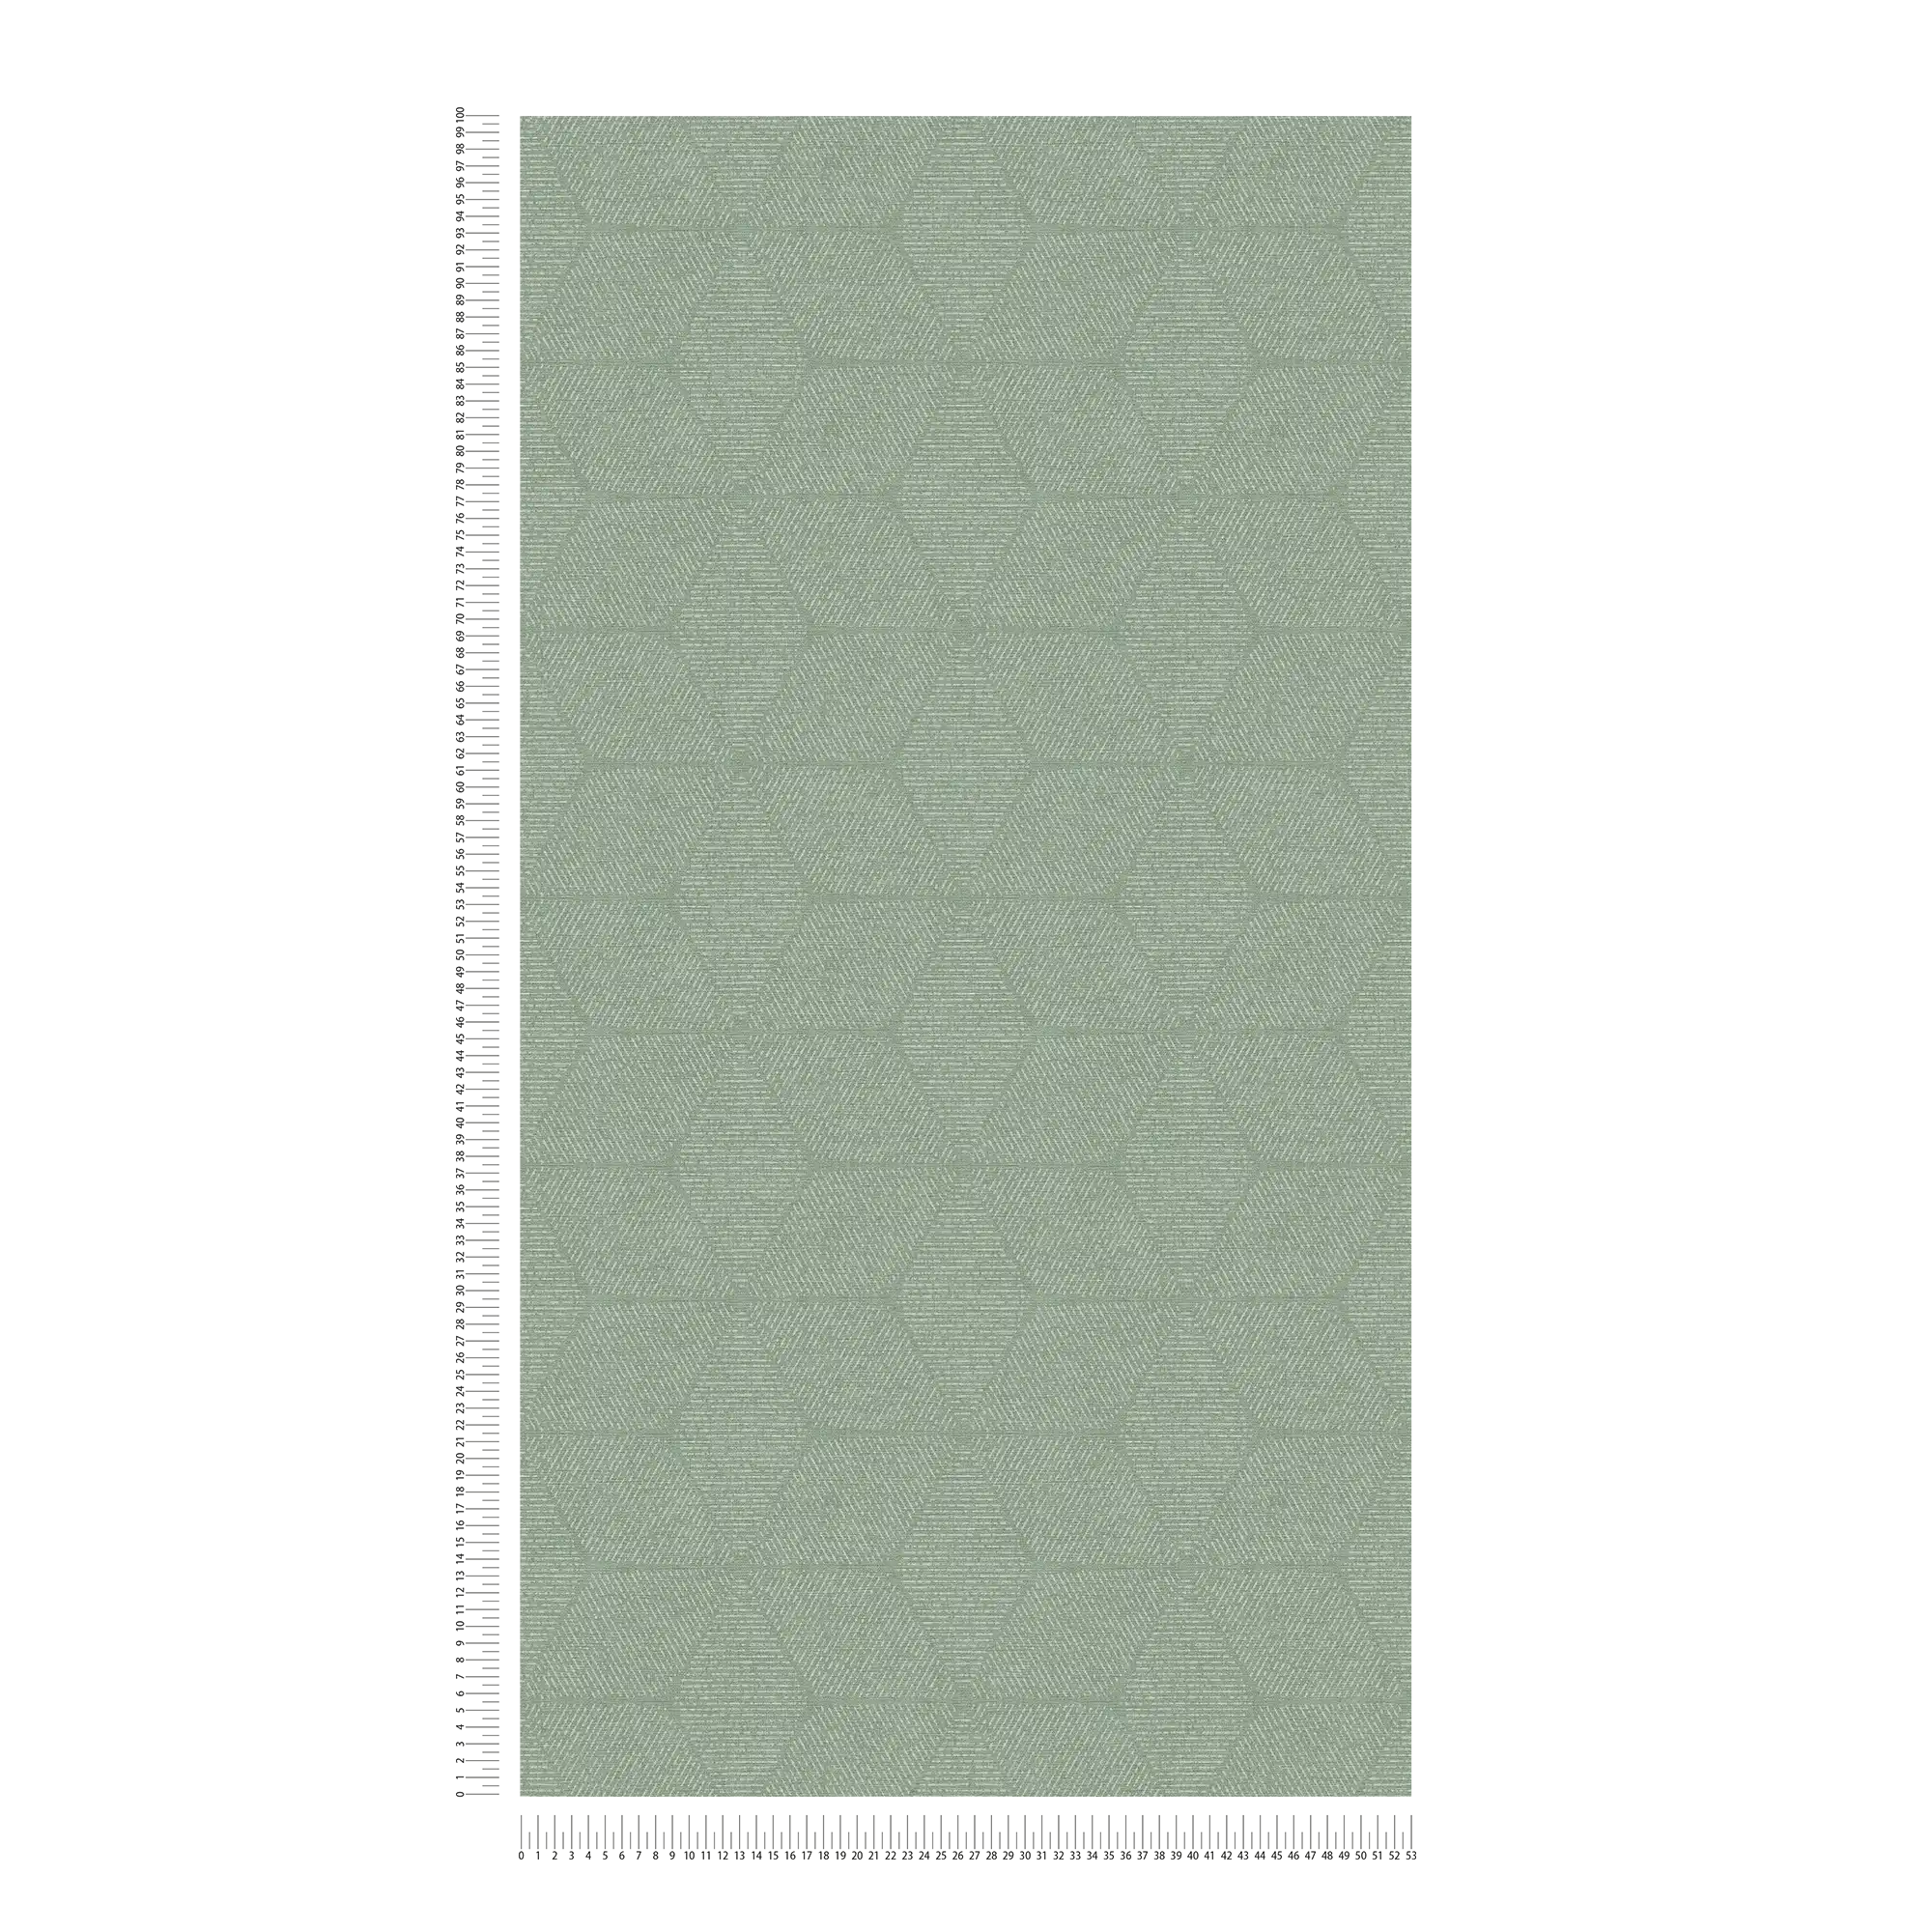             Vliesbehang met bloemenmotief - groen, wit
        